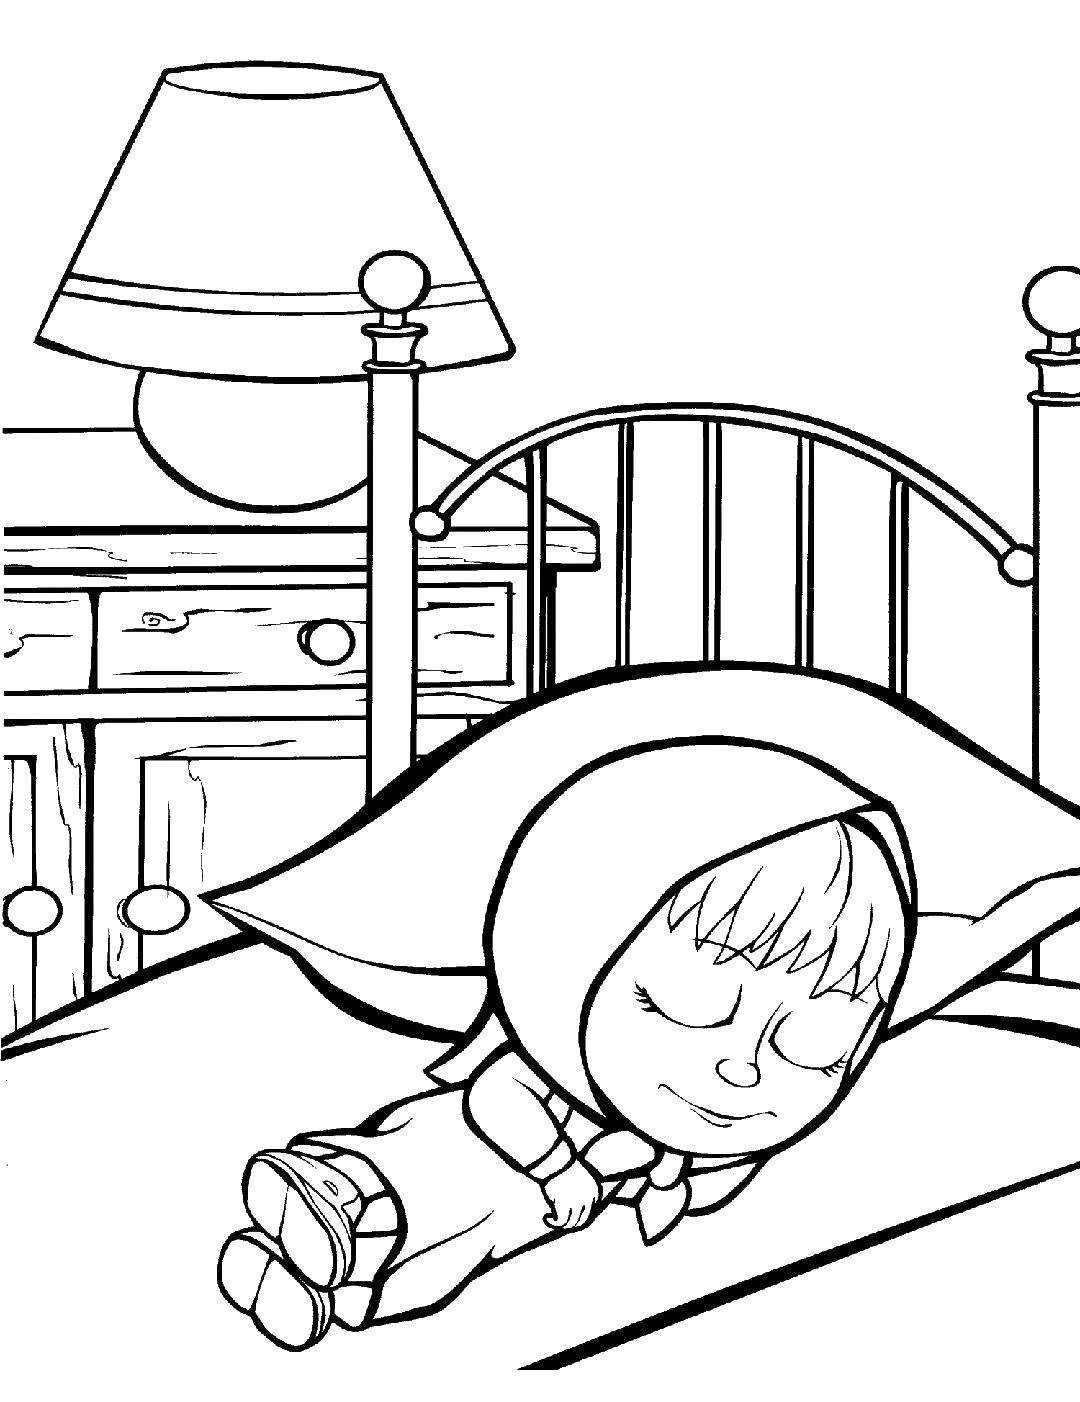 Название: Раскраска Маша спит. Категория: Кровать. Теги: Маша и медведь, мультфильмы, сказка.